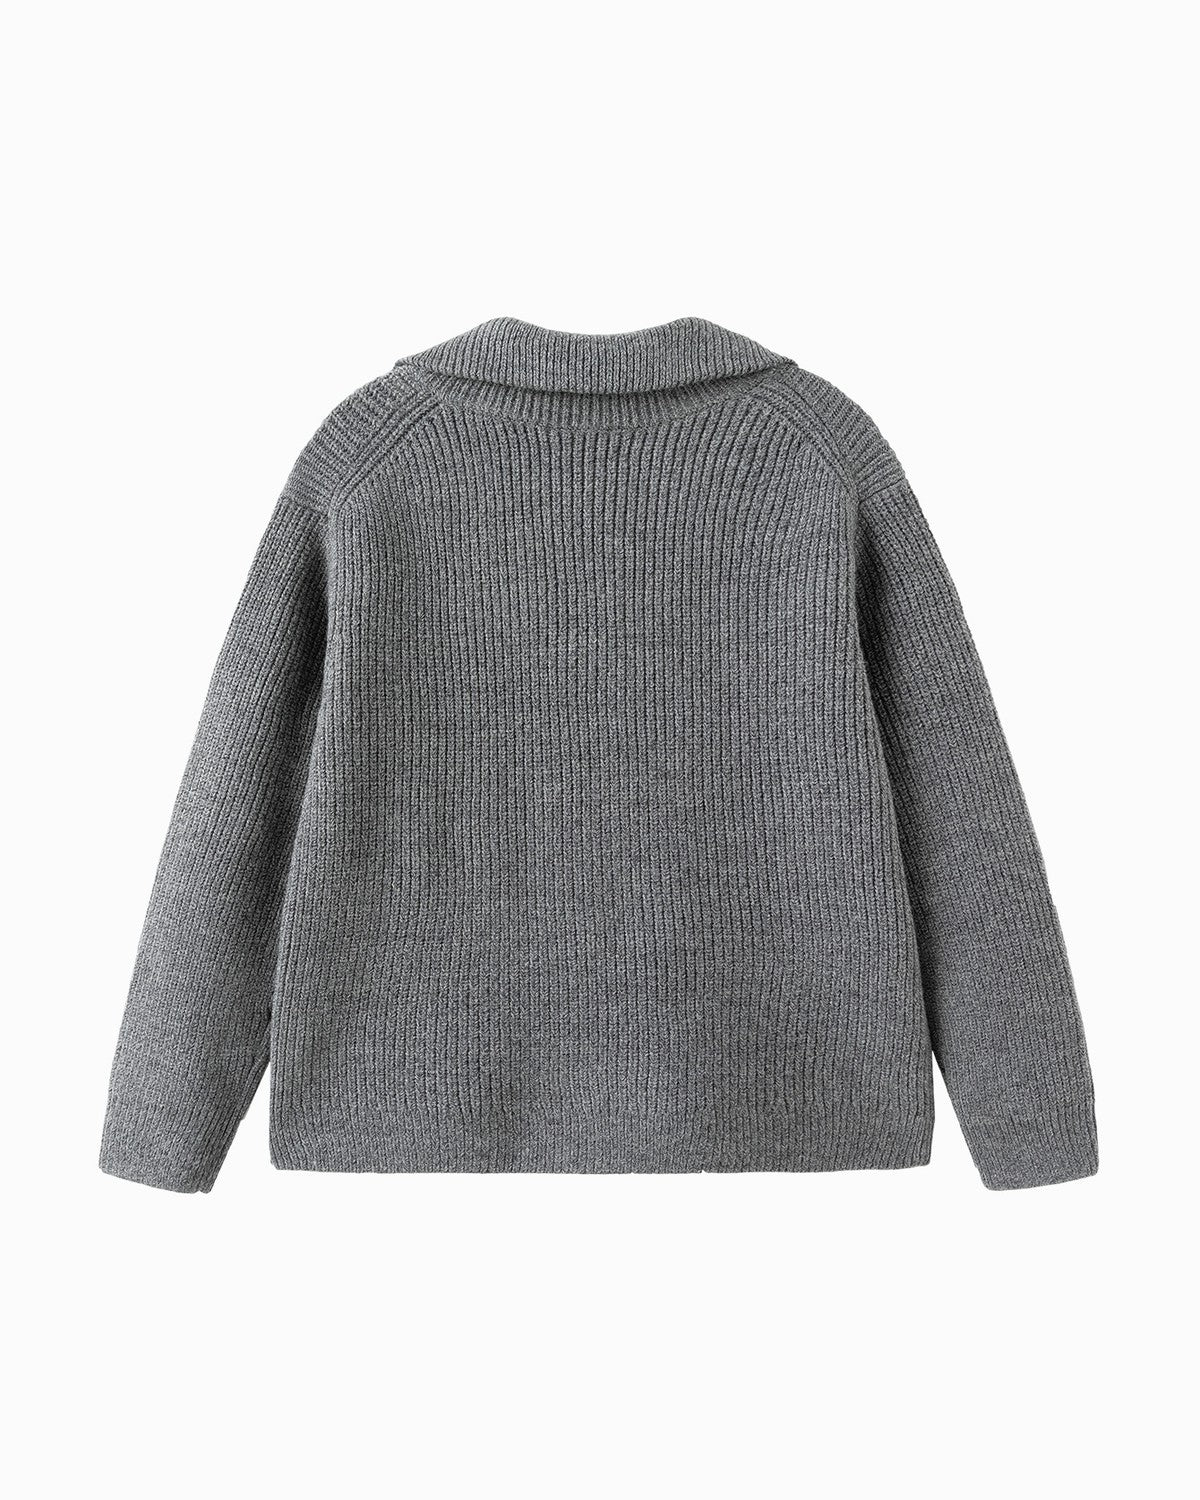 Balabala Kids Unisex Medium Melange Gray Sweater